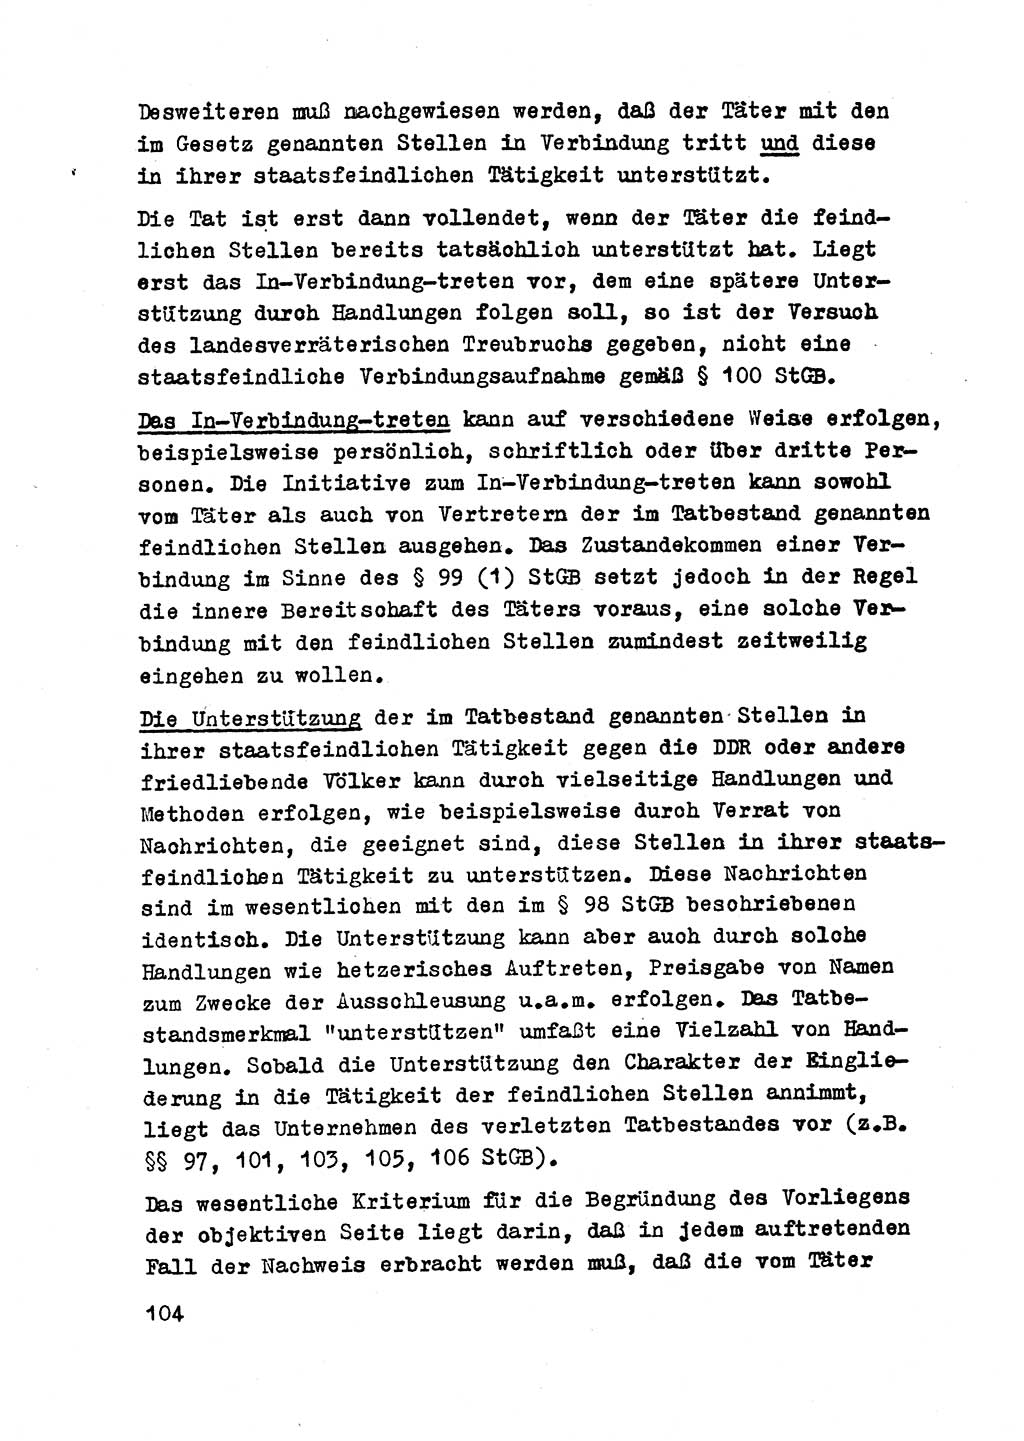 Strafrecht der DDR (Deutsche Demokratische Republik), Besonderer Teil, Lehrmaterial, Heft 2 1969, Seite 104 (Strafr. DDR BT Lehrmat. H. 2 1969, S. 104)